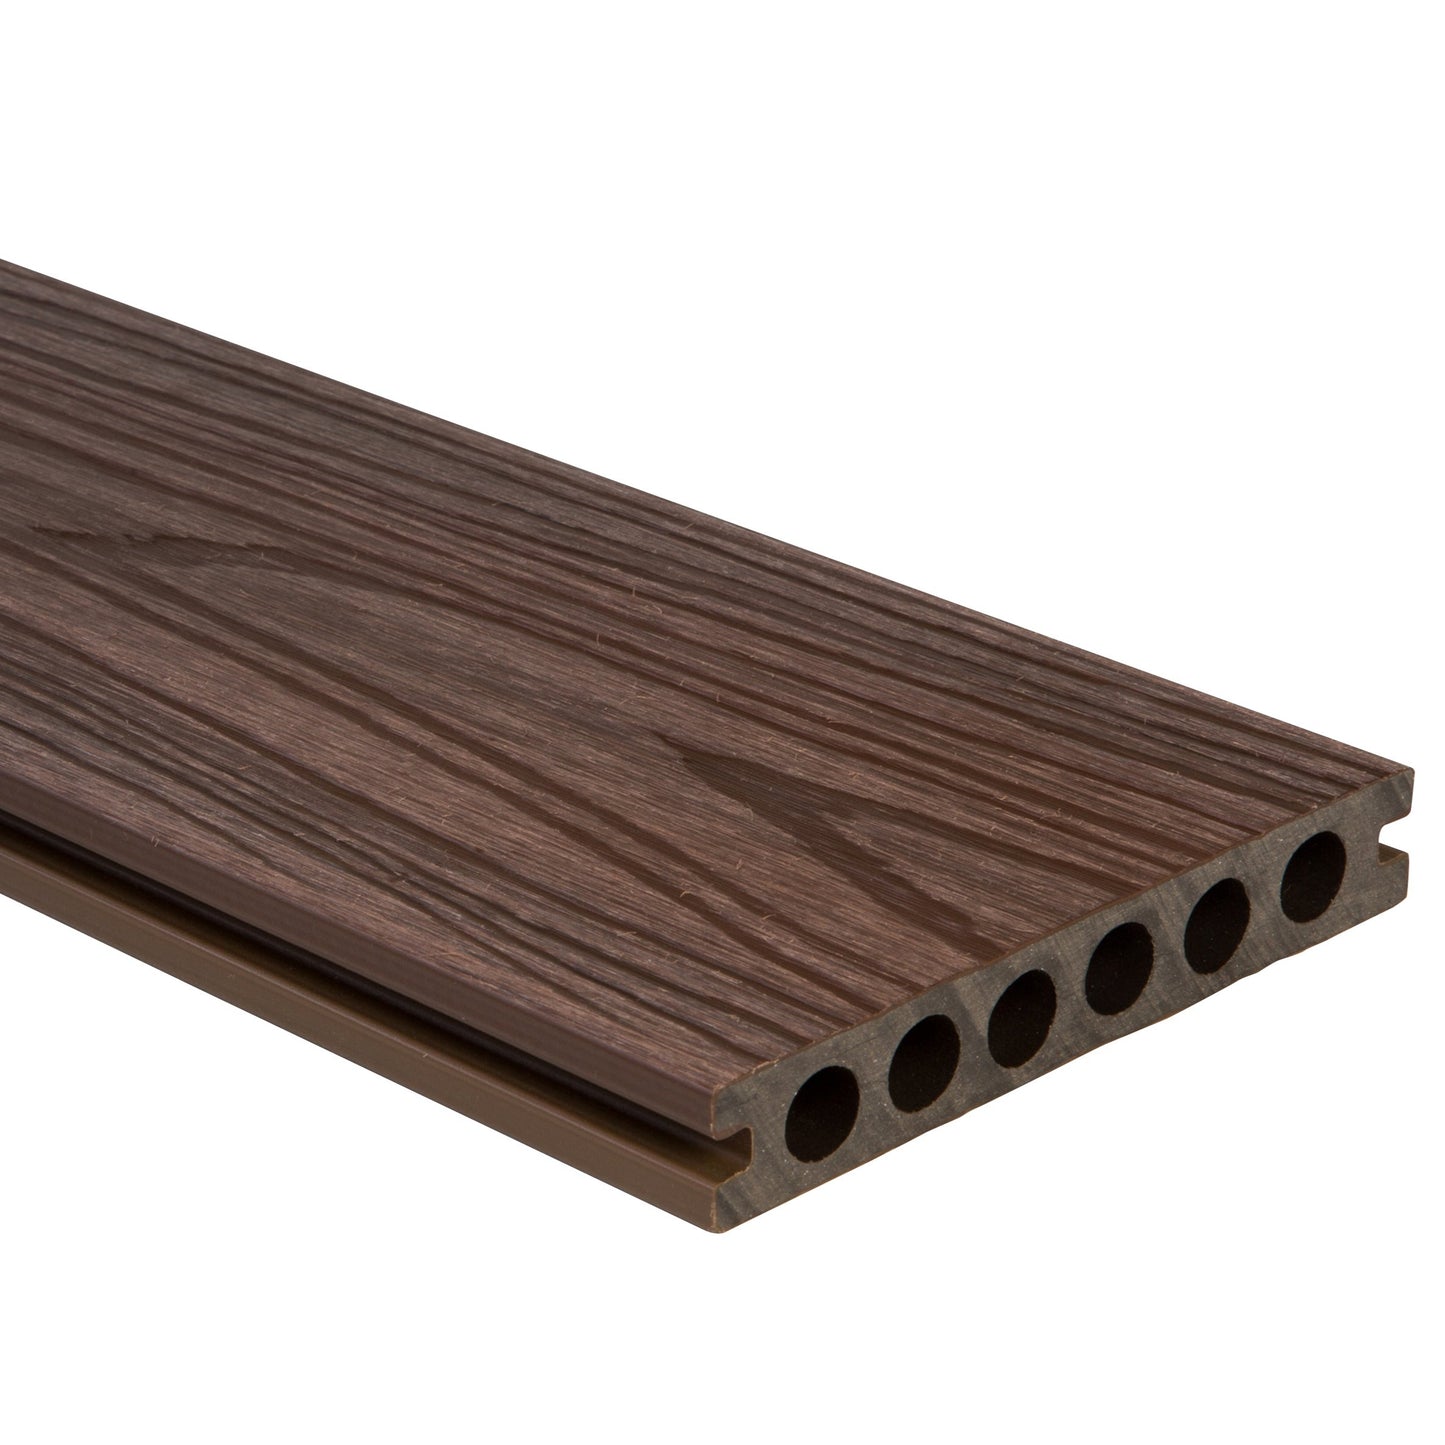 HD Deck Dual Oak/Walnut (Price per board) 22.5mm x 143mm x 3600mm